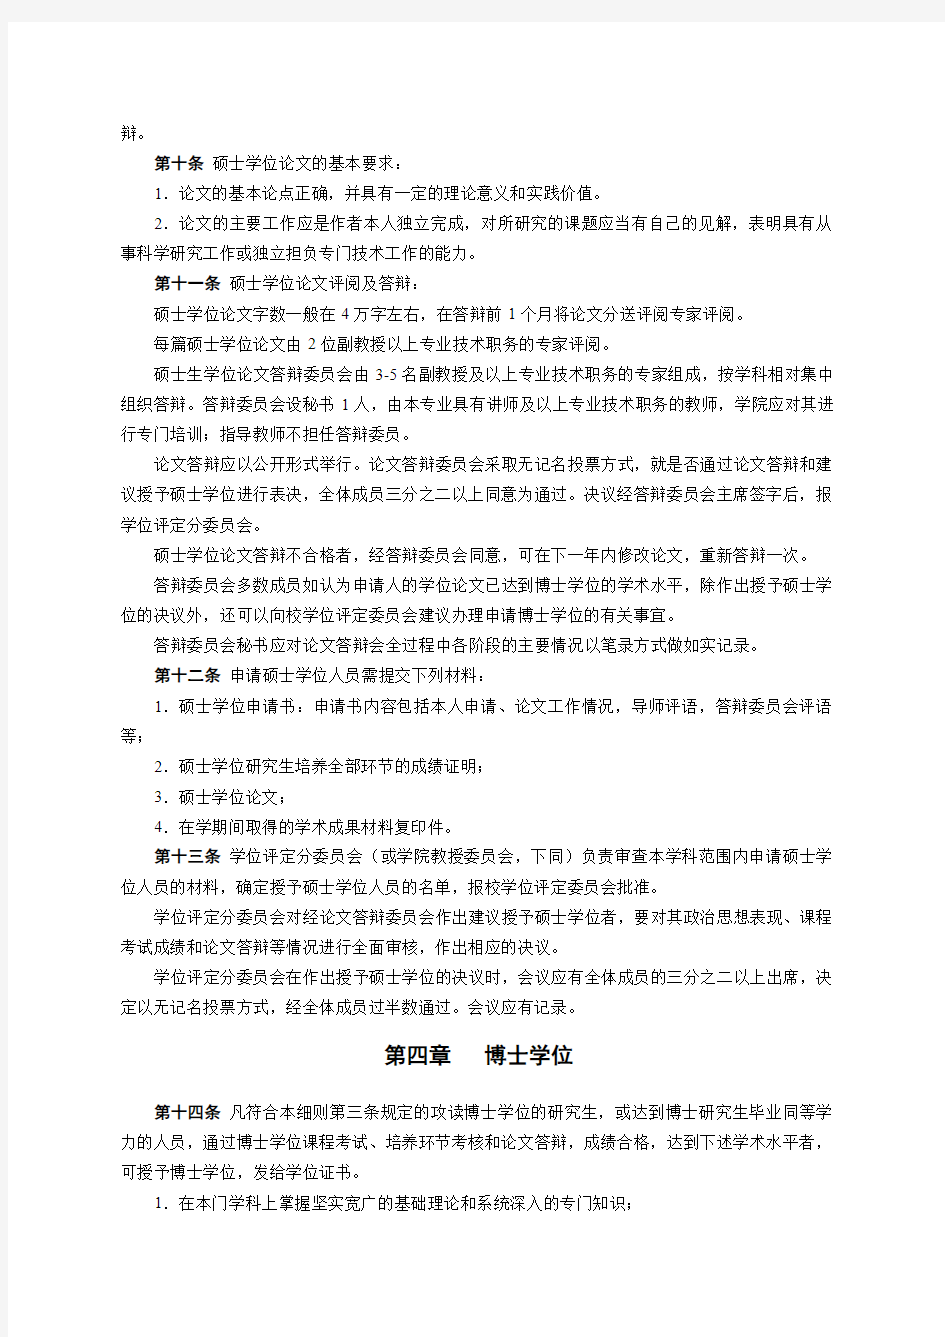 中国矿业大学学位授予工作实施细则